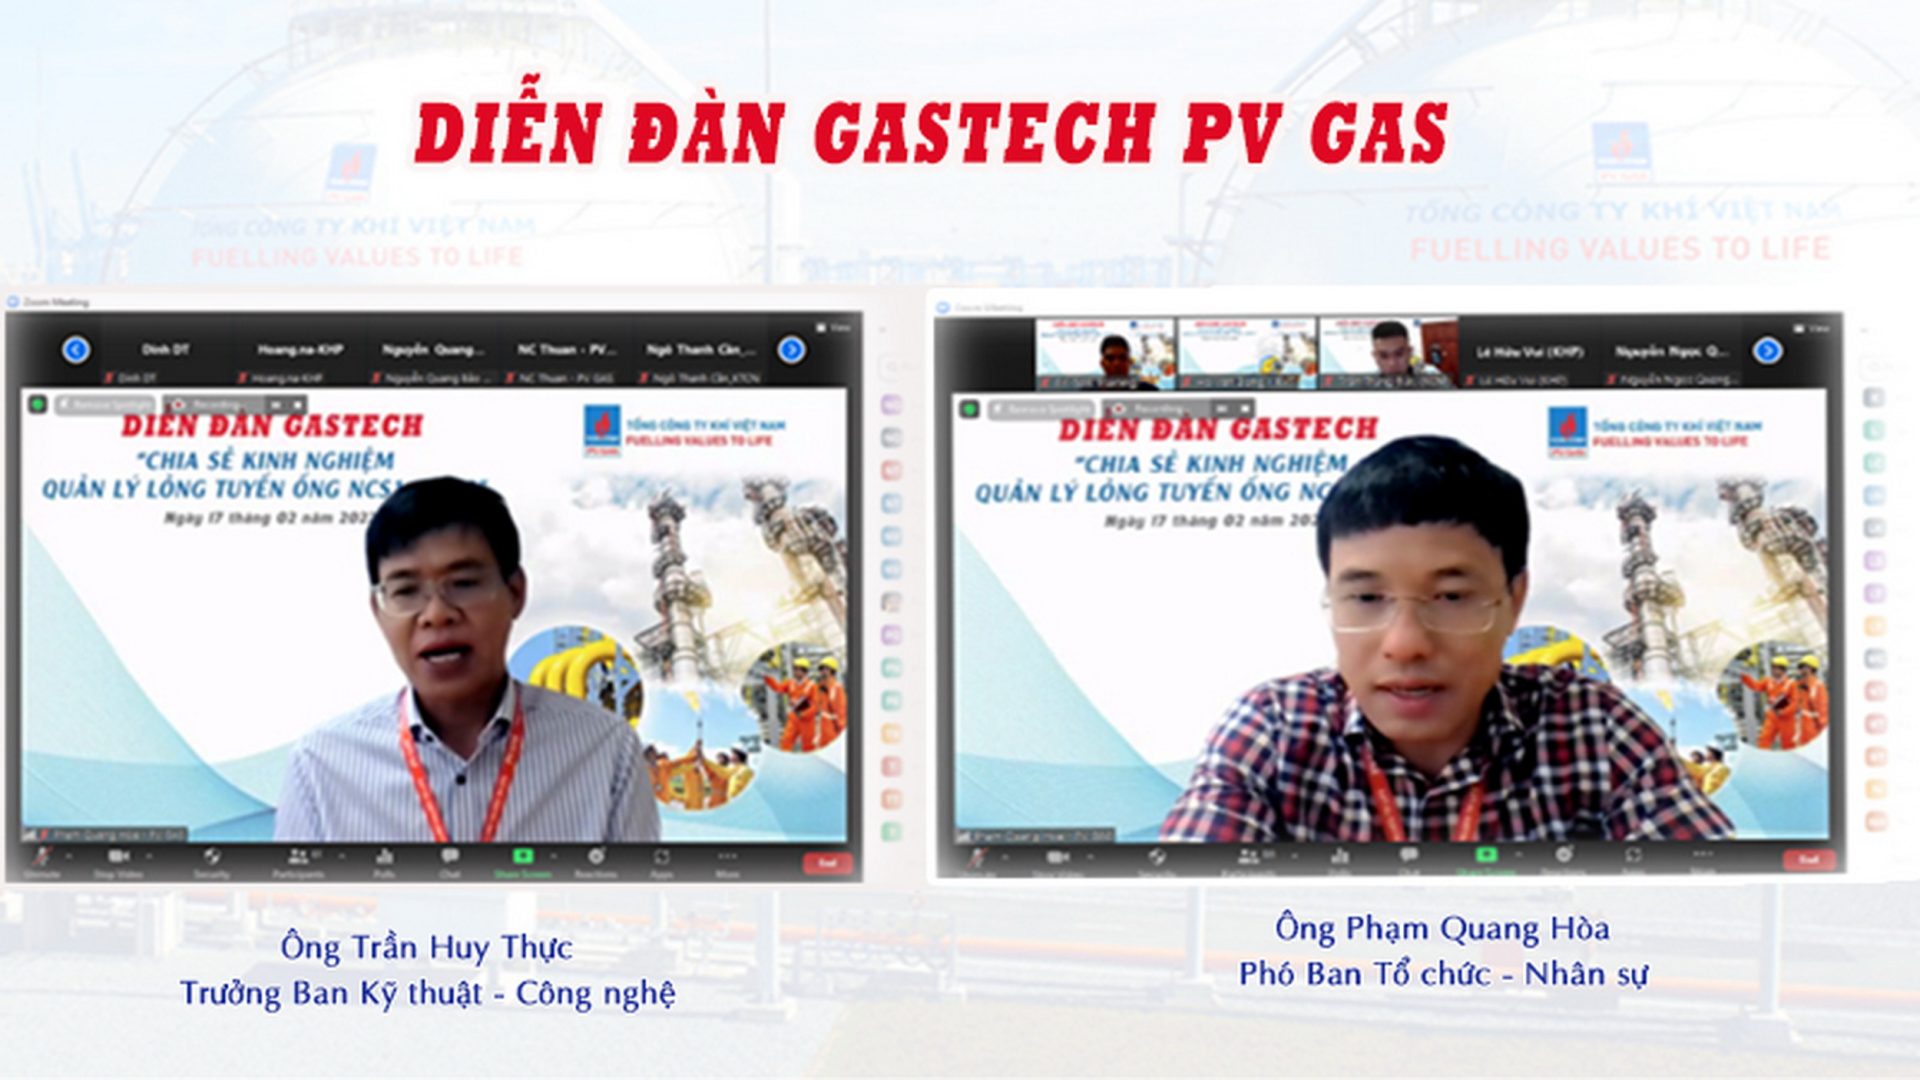 PV GAS tổ chức Diễn đàn tri thức chuyên ngành “Gastech forum”